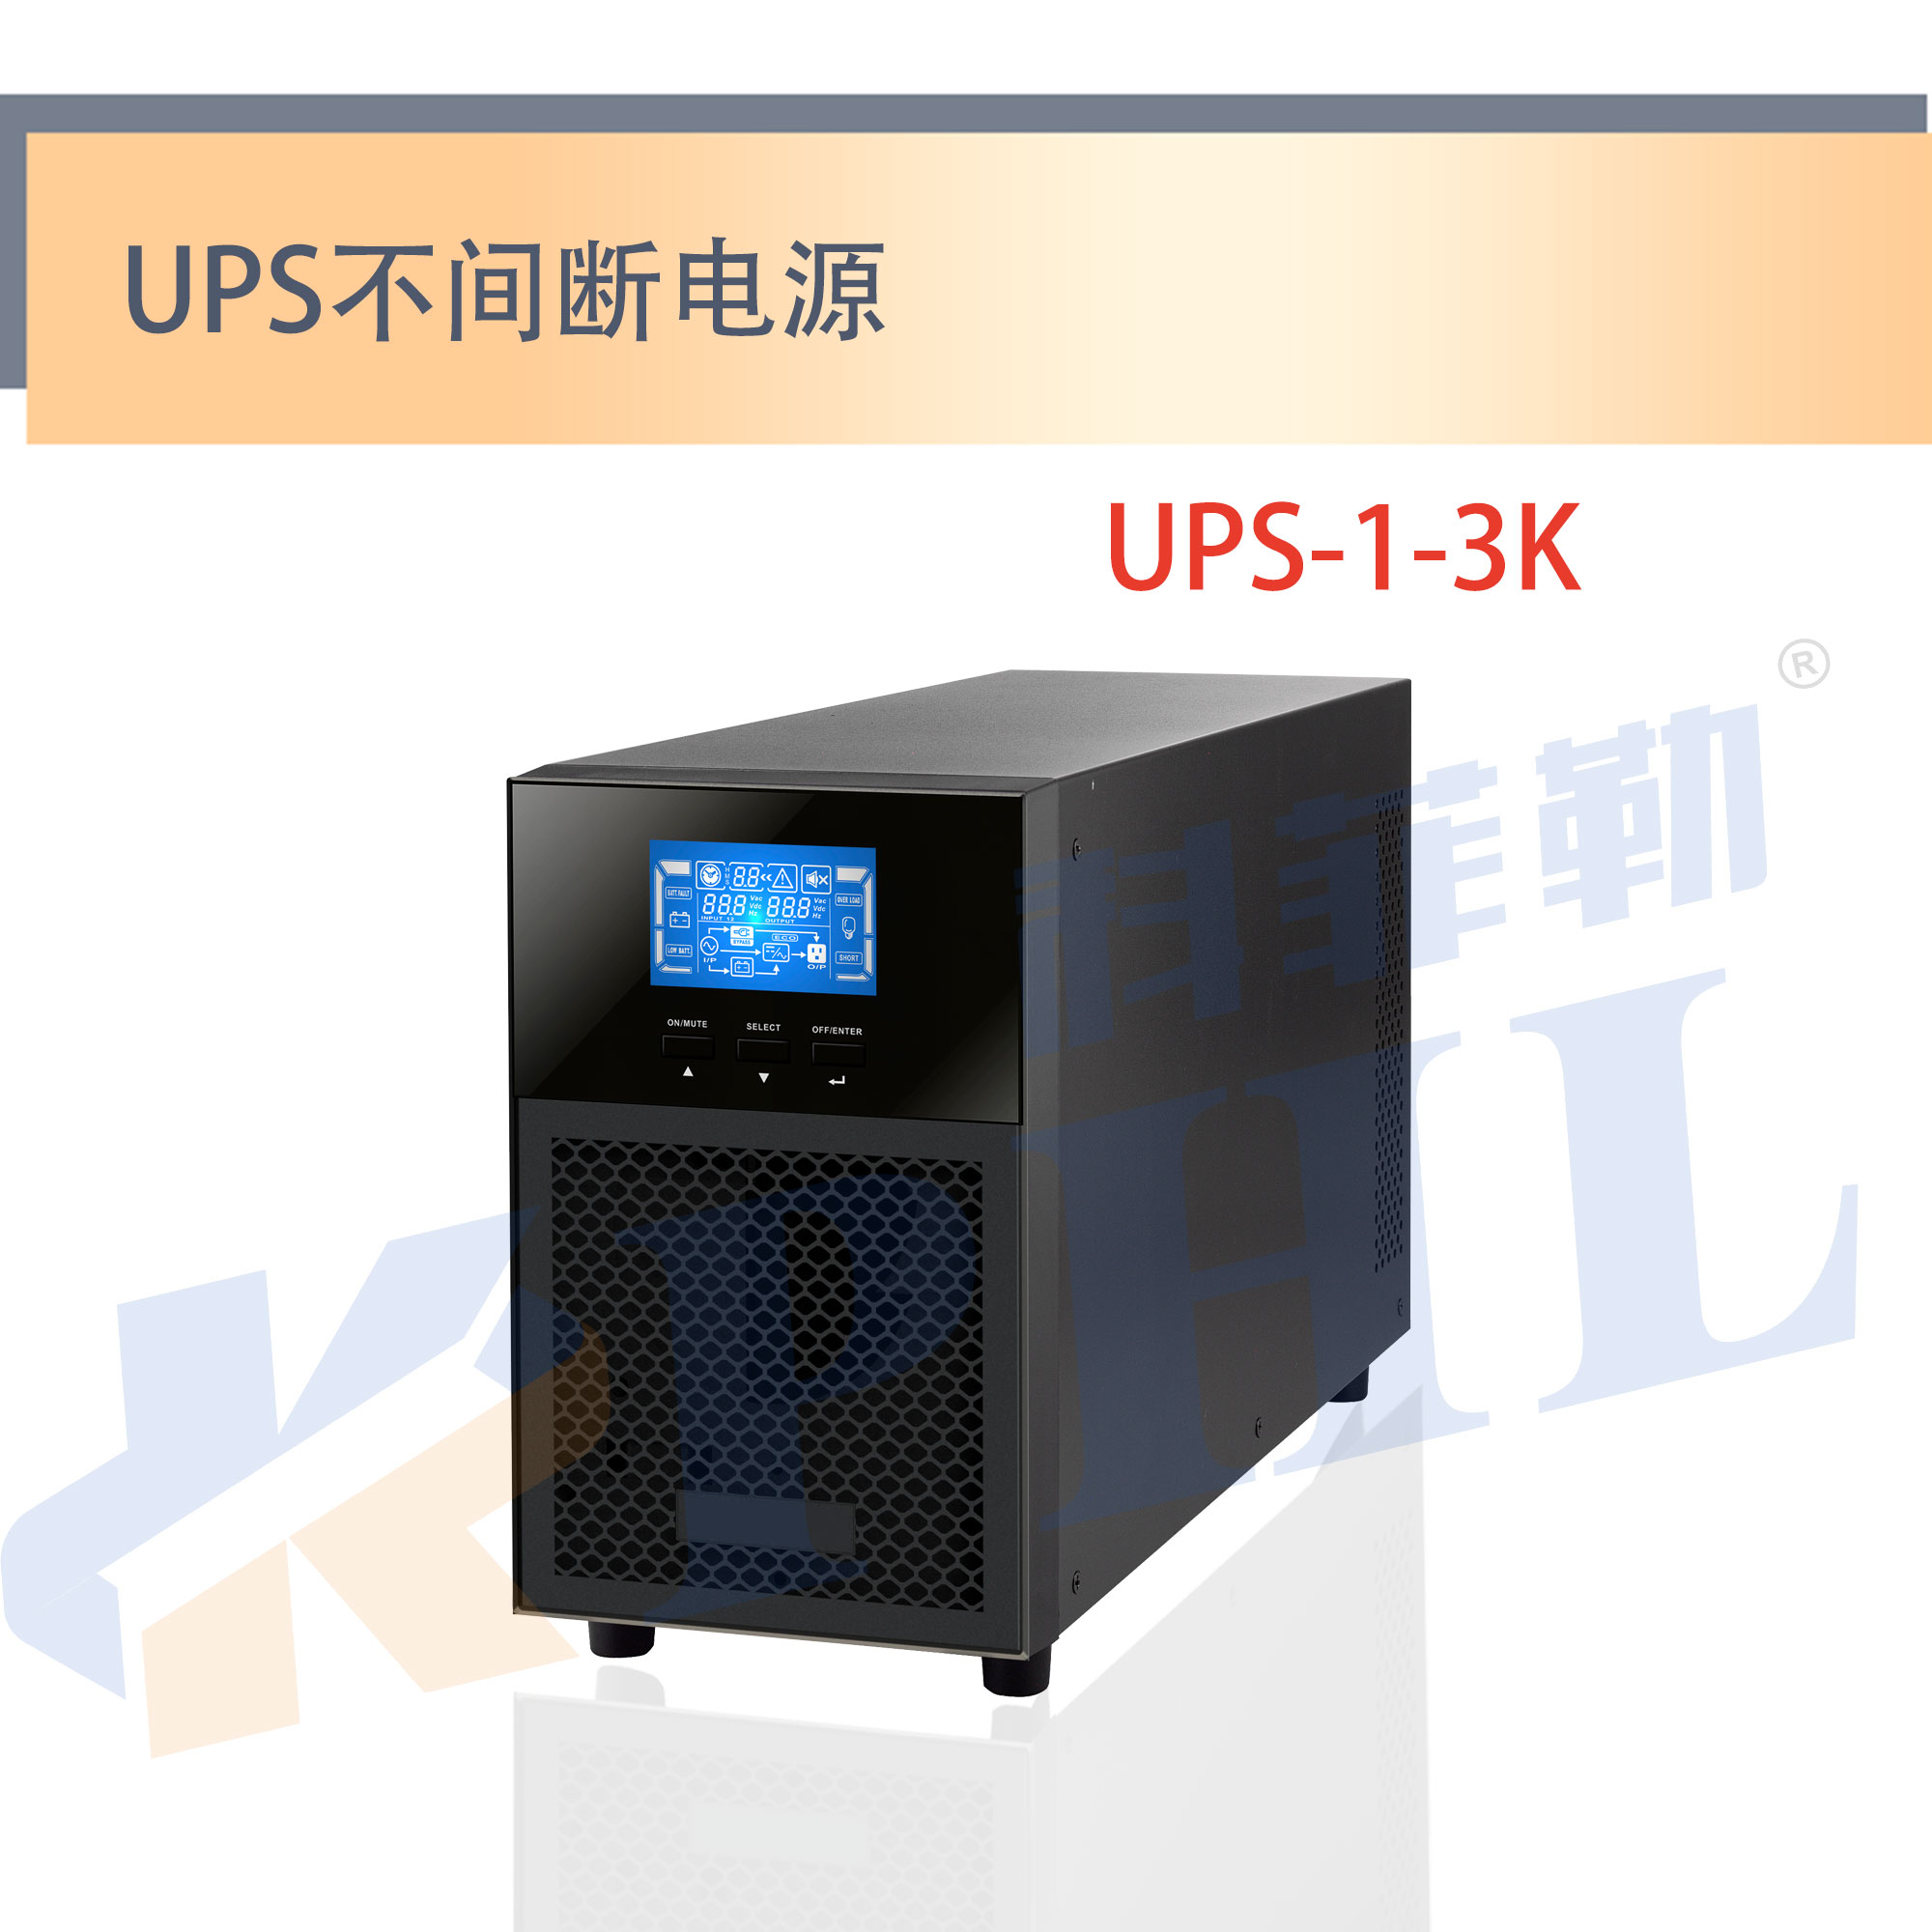 UPS-1-3K侧面